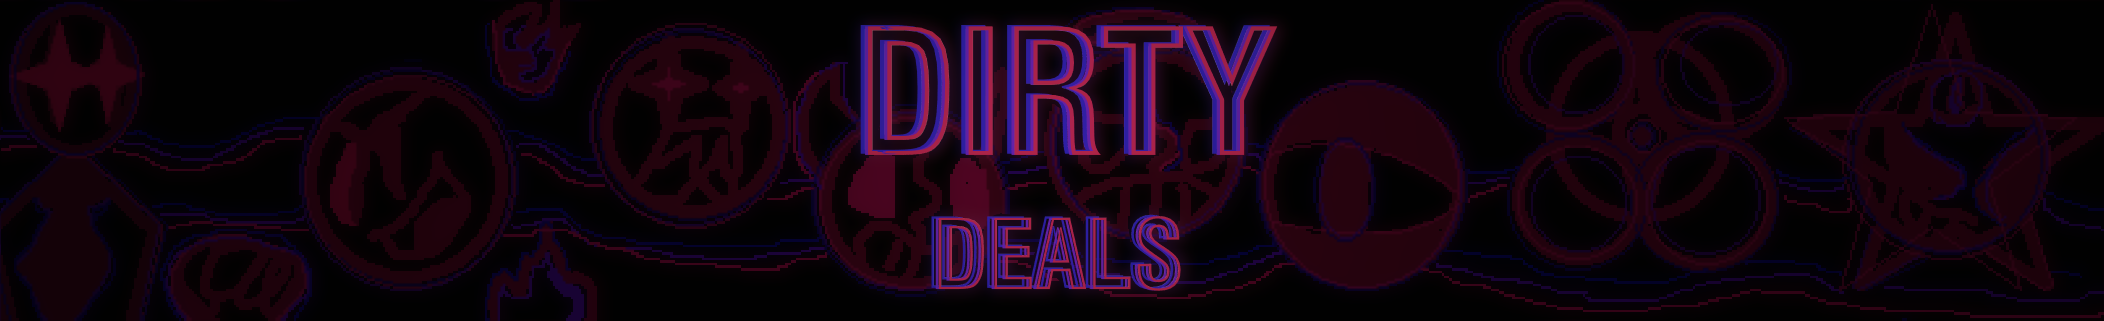 Dirty Deals